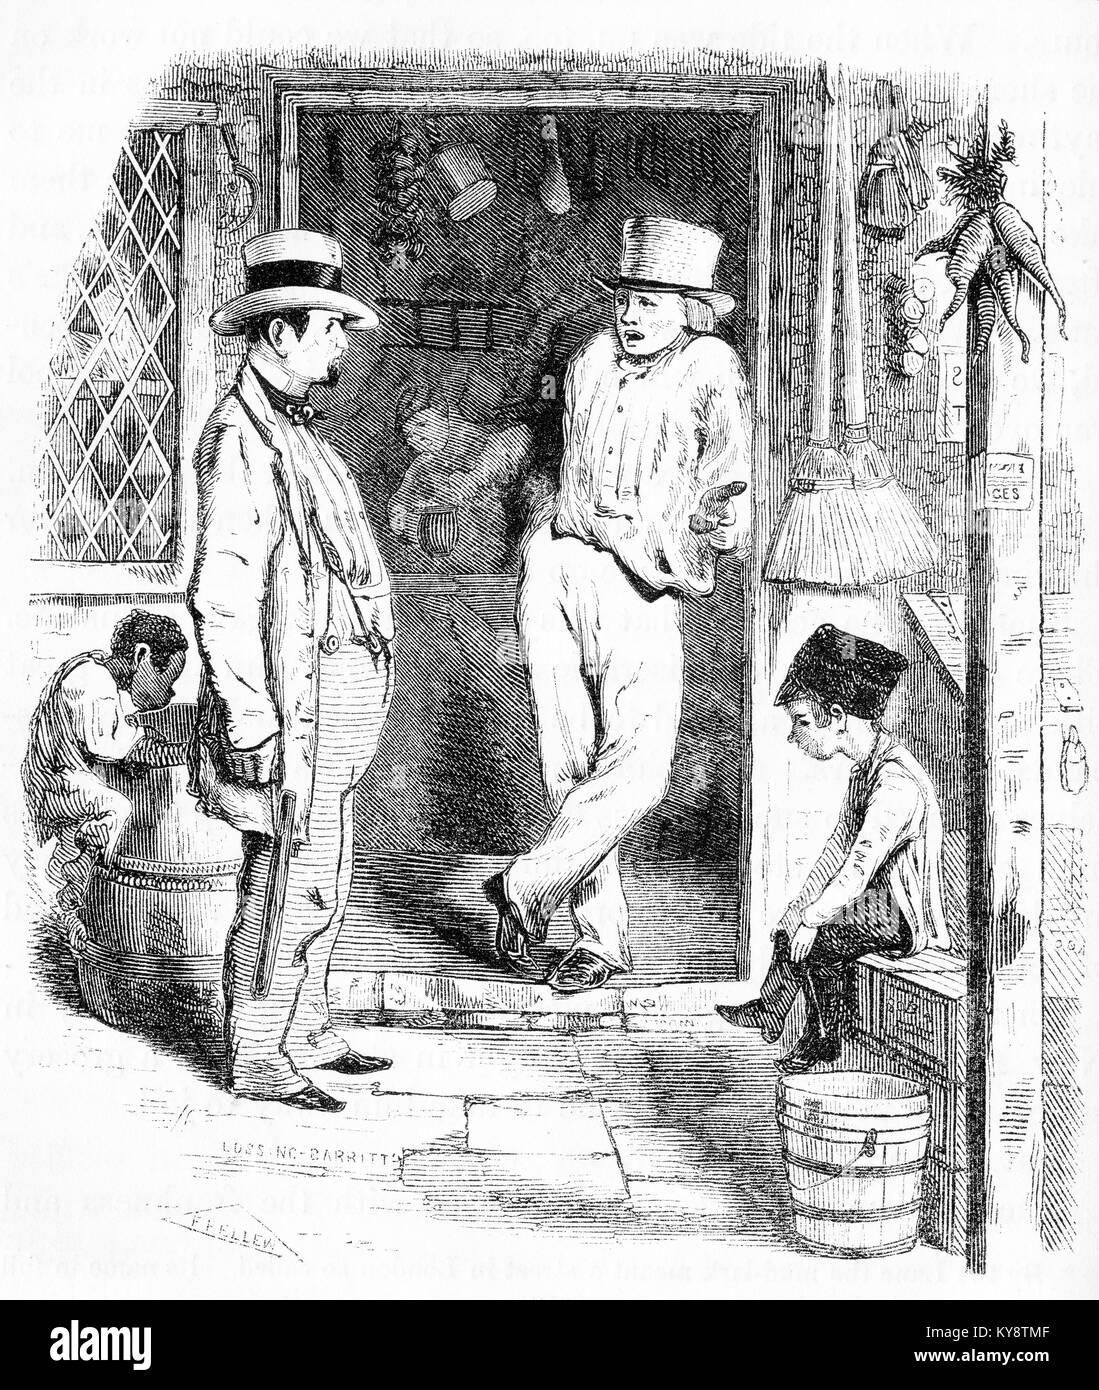 Grabado de un chico pick-embolsarse un hombre en una calle de Londres escena durante la época victoriana. A partir de un original grabado en la Harper's libros de cuentos por Jacob Abbott, 1854. Foto de stock